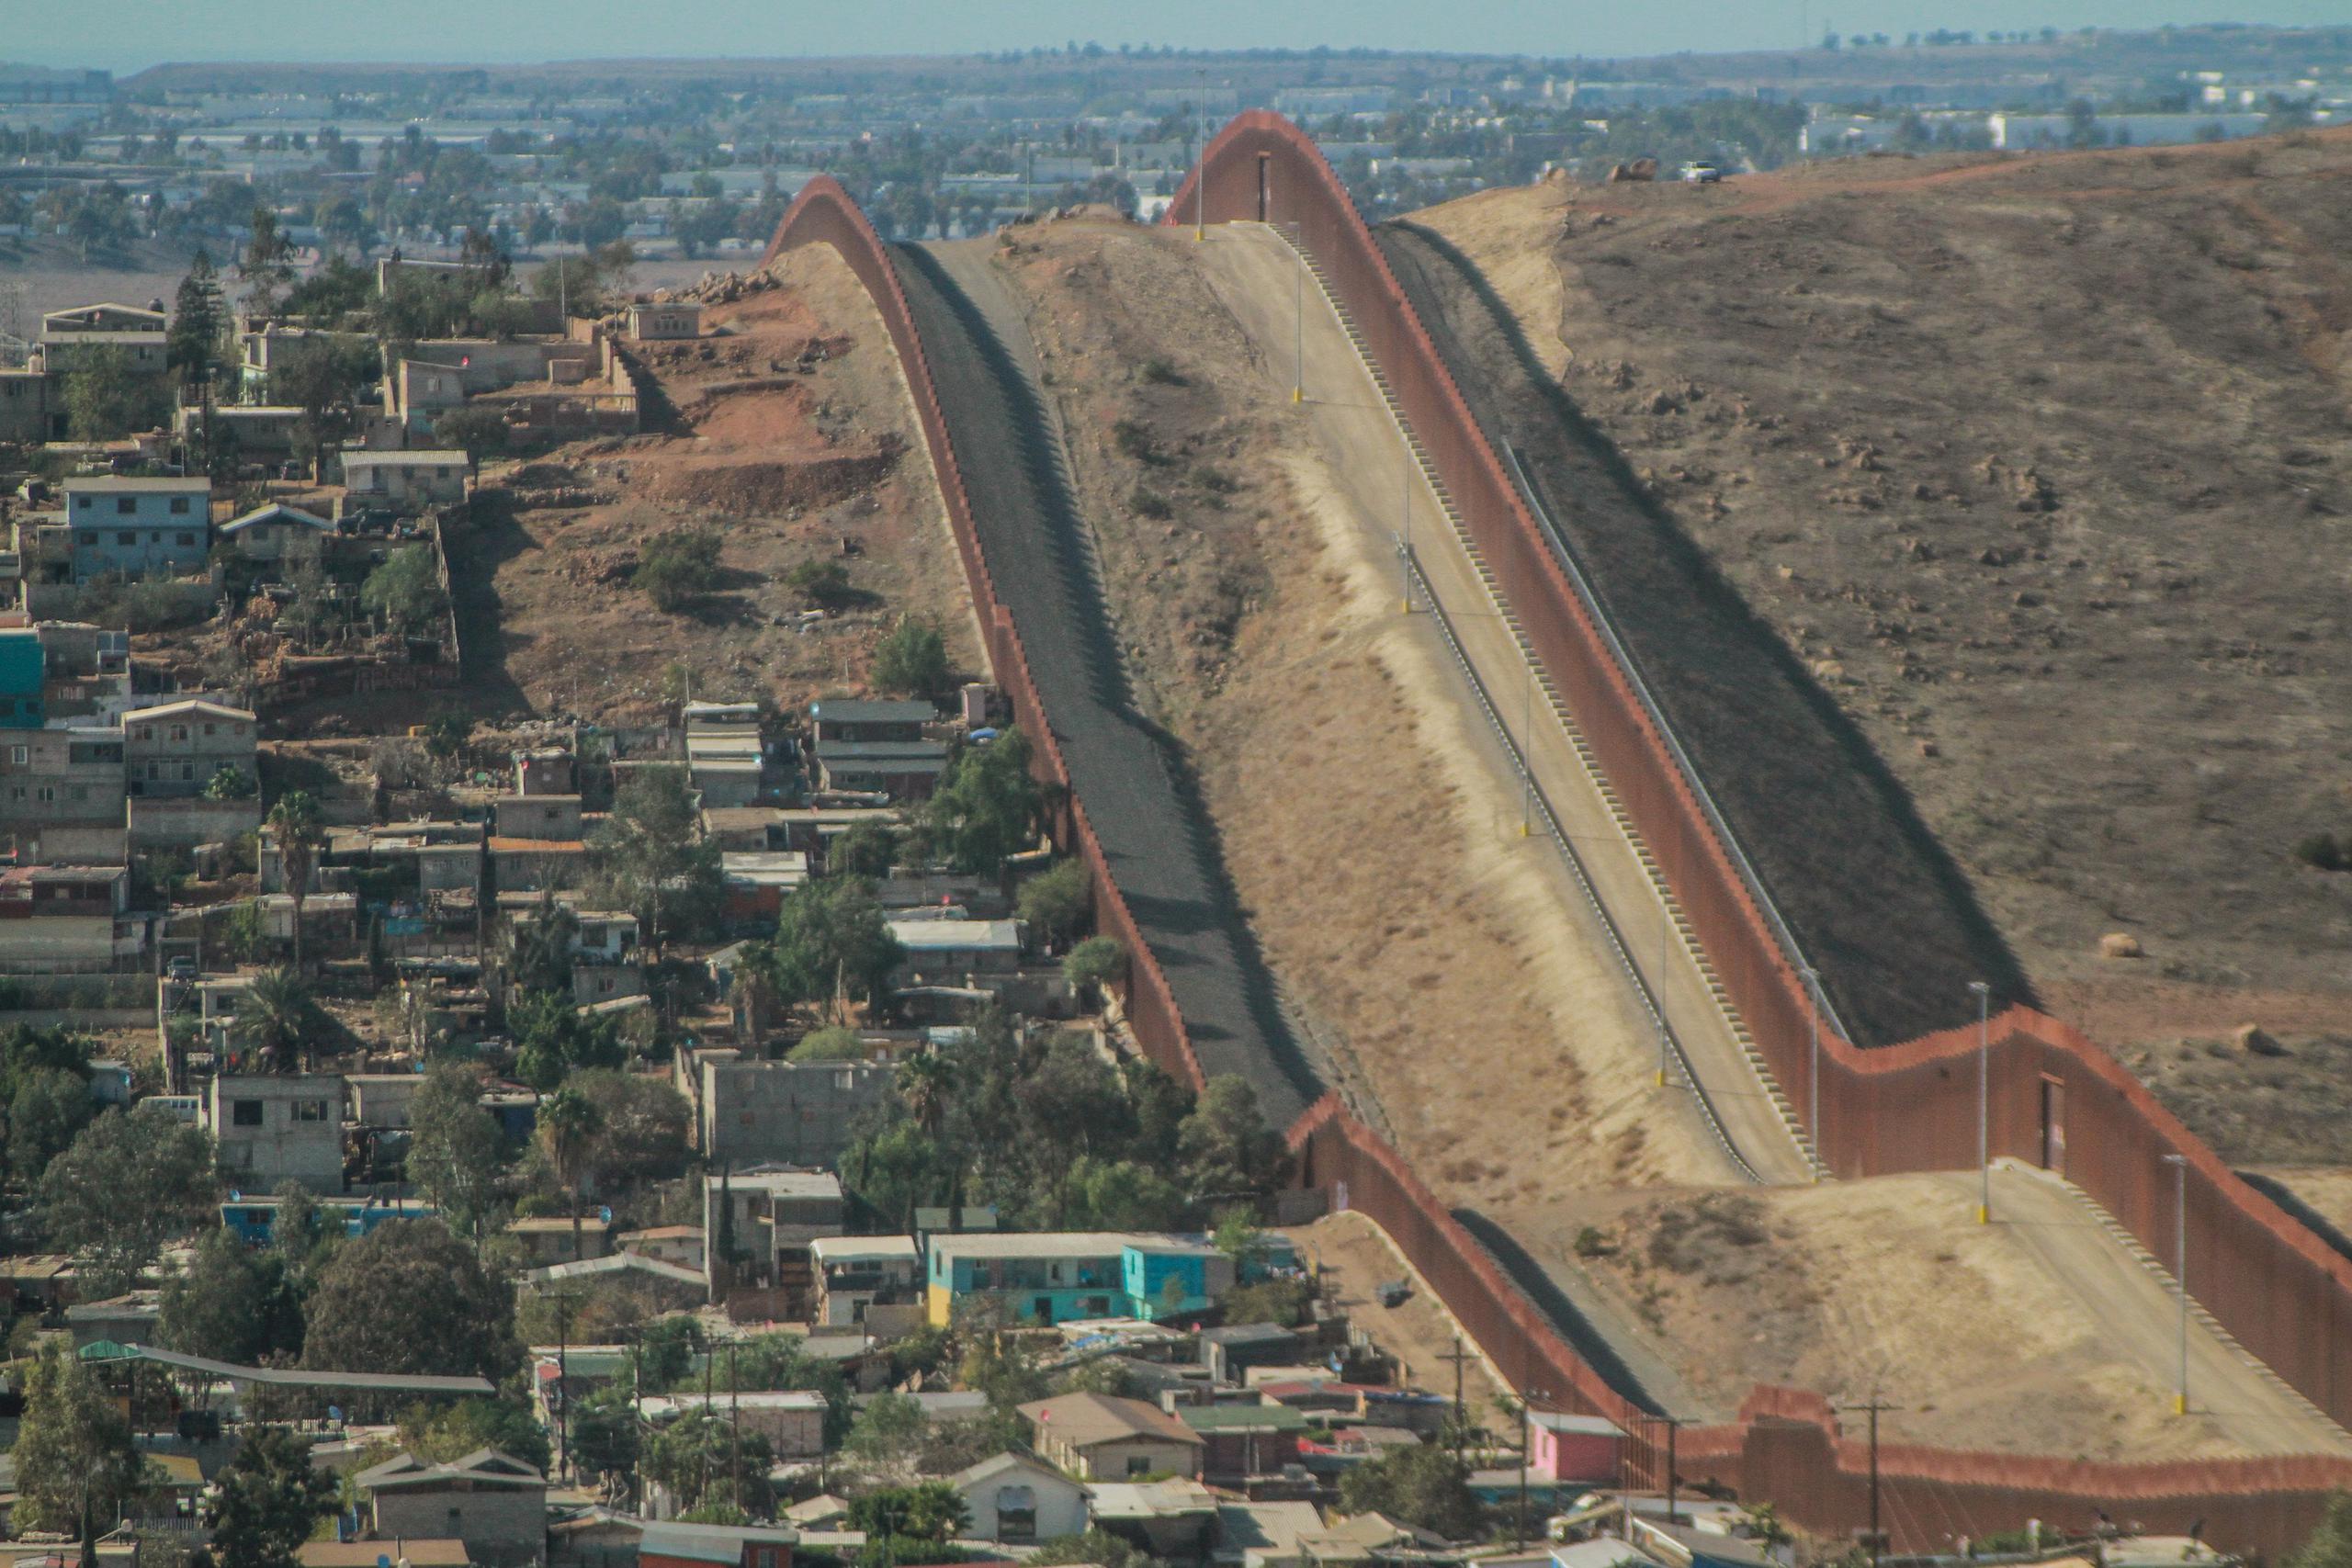 Vista de archivo del muro fronterizo estadounidense en la ciudad de Tijuana, Baja California (México). EFE/Joebeth Terriquez
